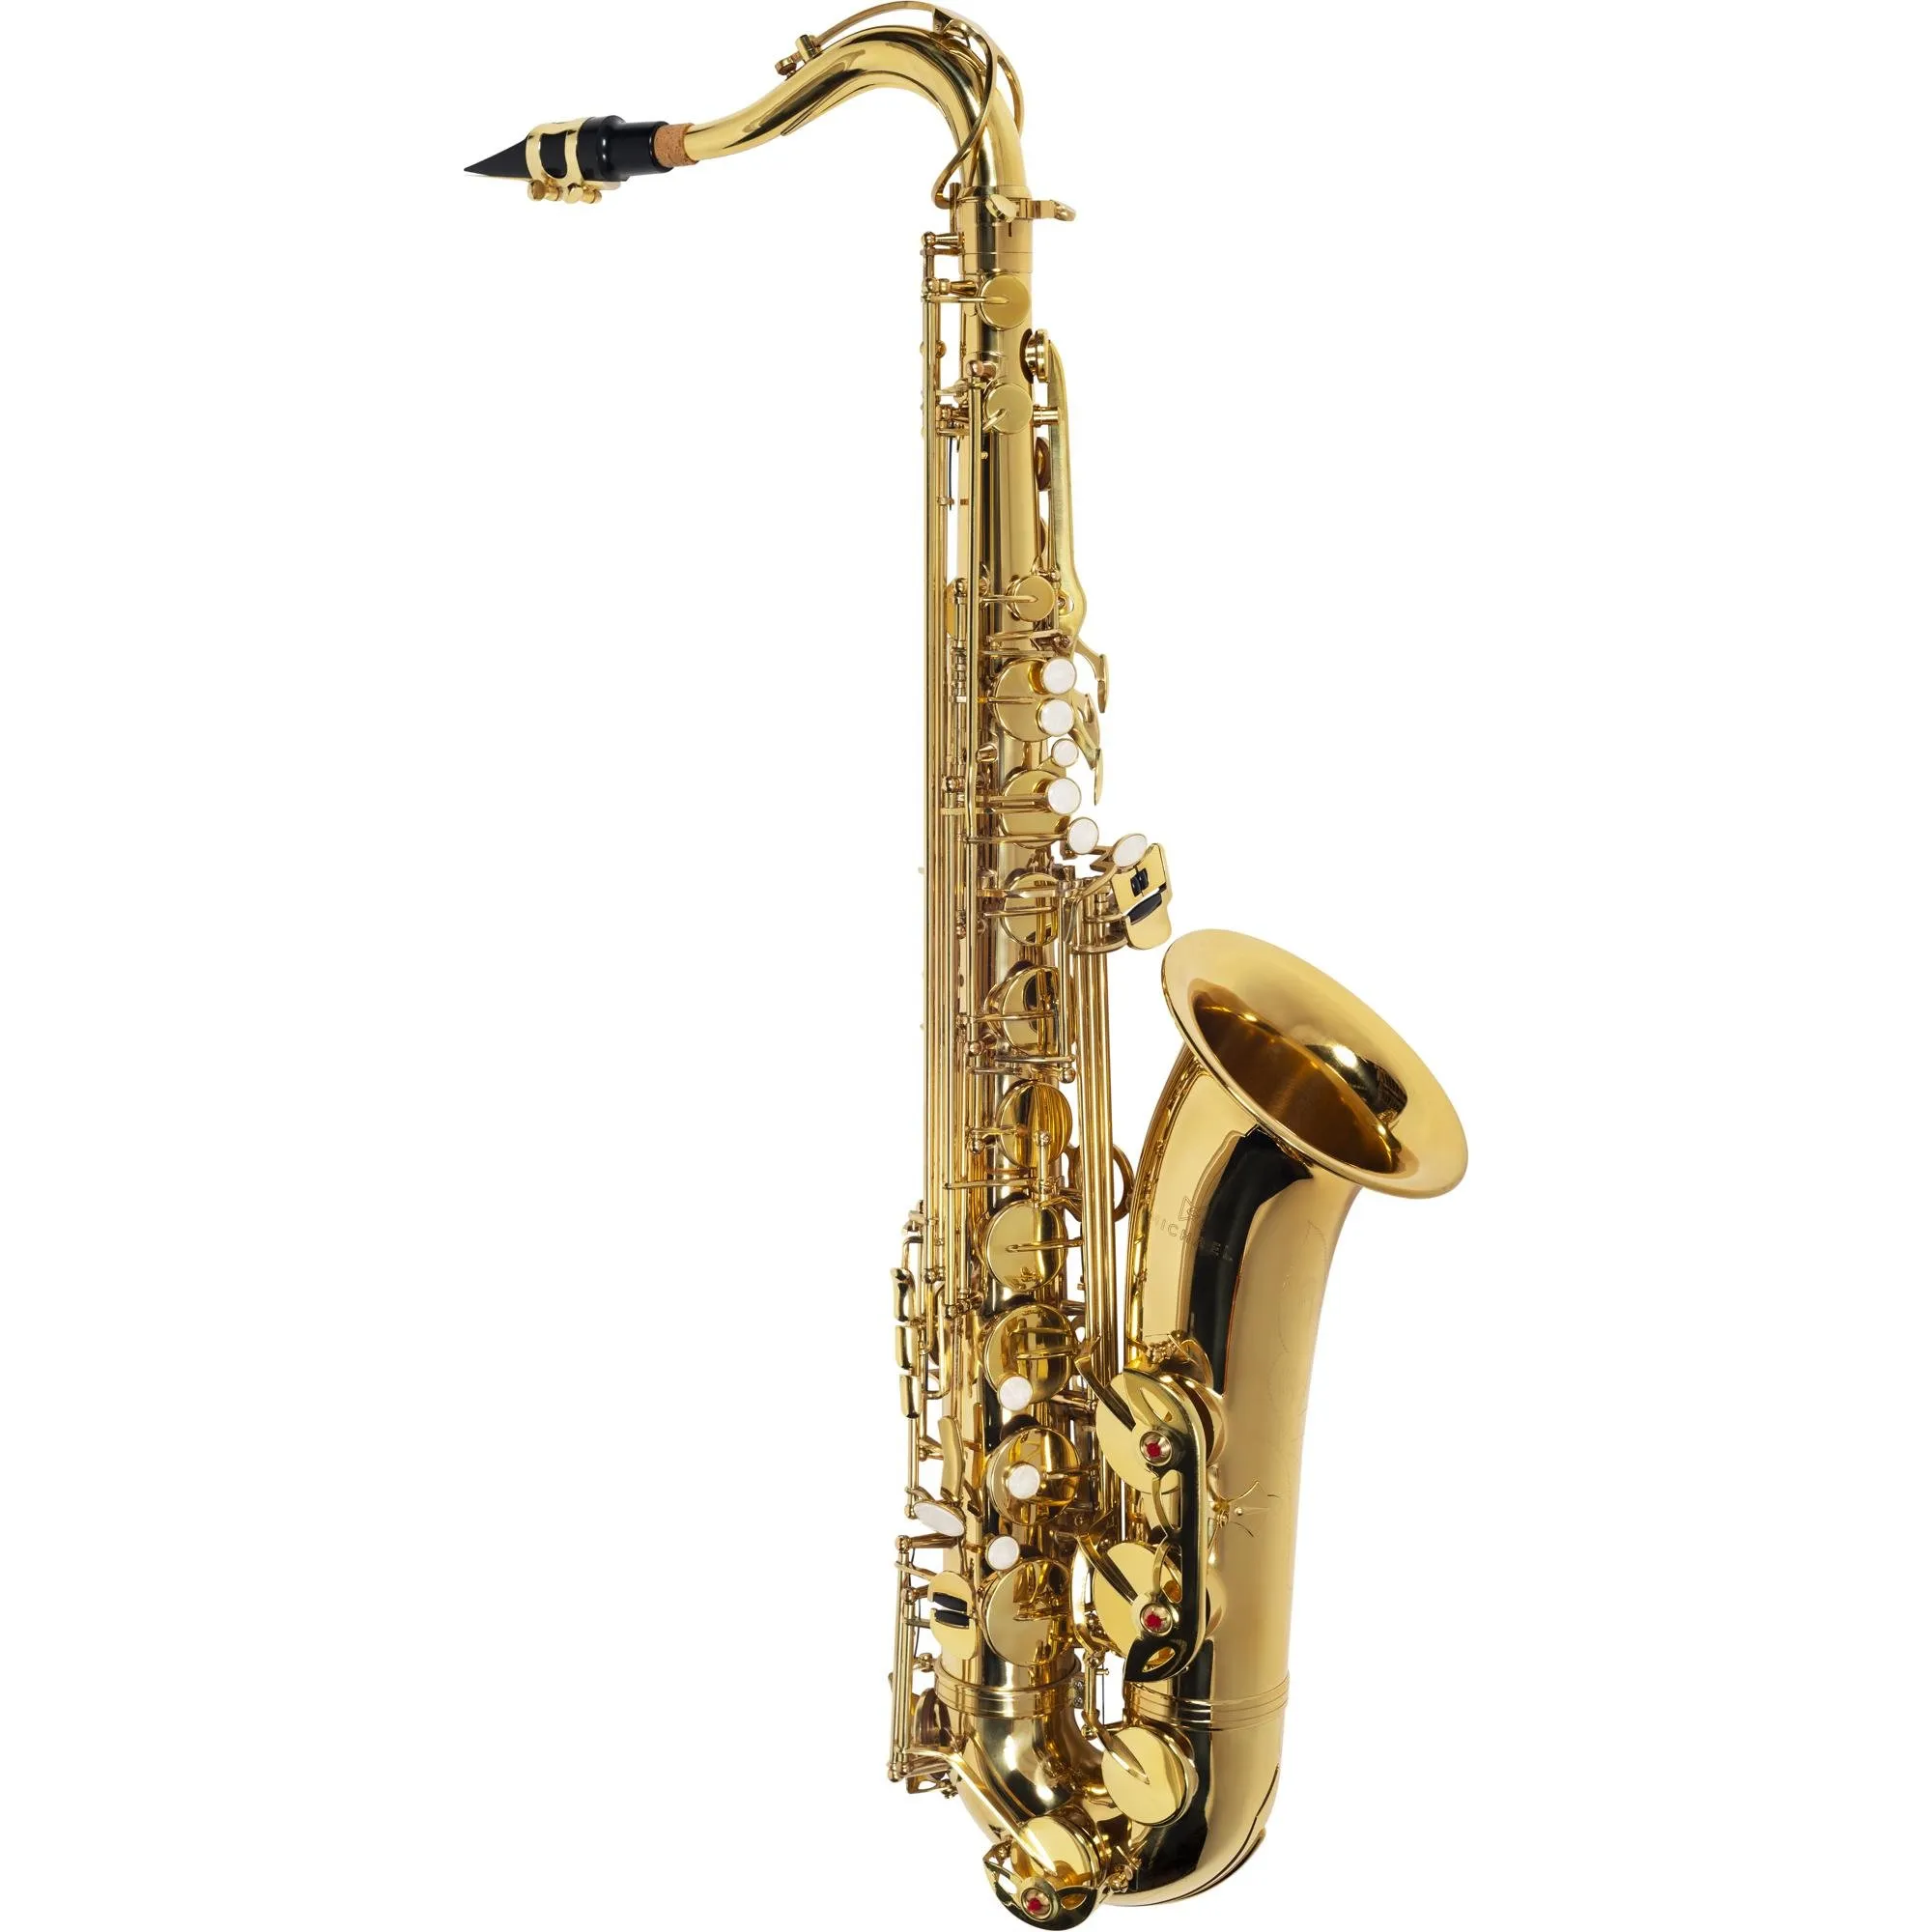 Saxofone Tenor Michael WTSM30N Essence por 4.827,00 à vista no boleto/pix ou parcele em até 12x sem juros. Compre na loja Mundomax!